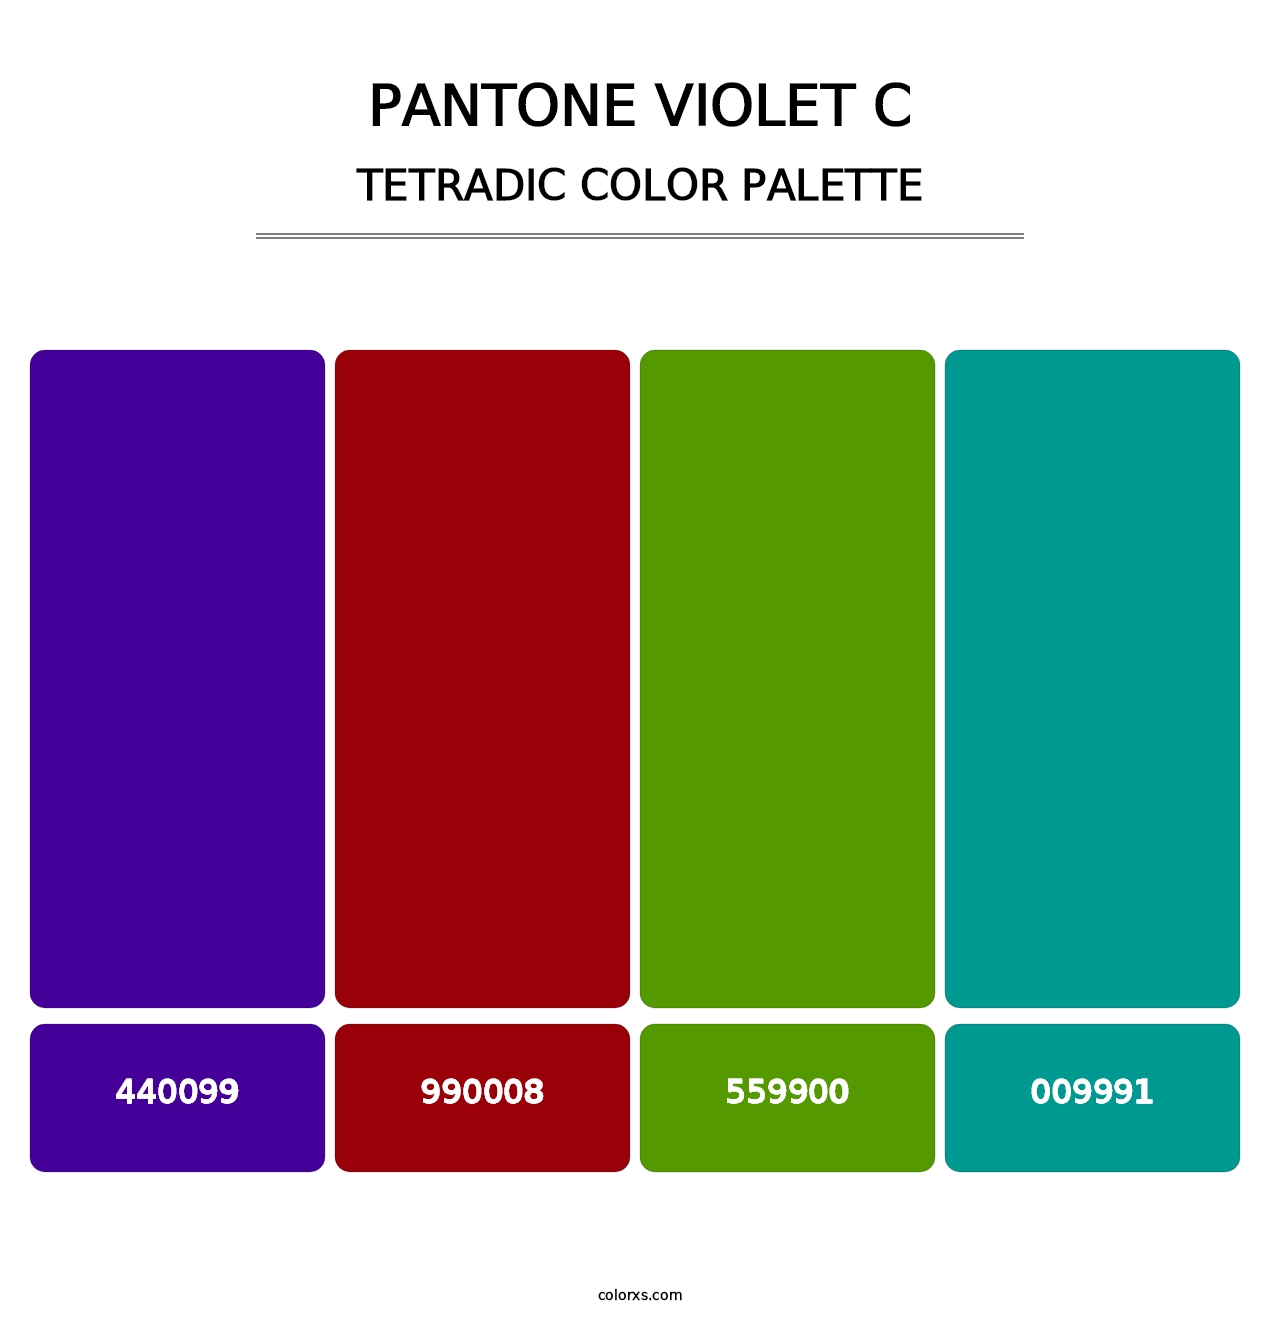 PANTONE Violet C - Tetradic Color Palette